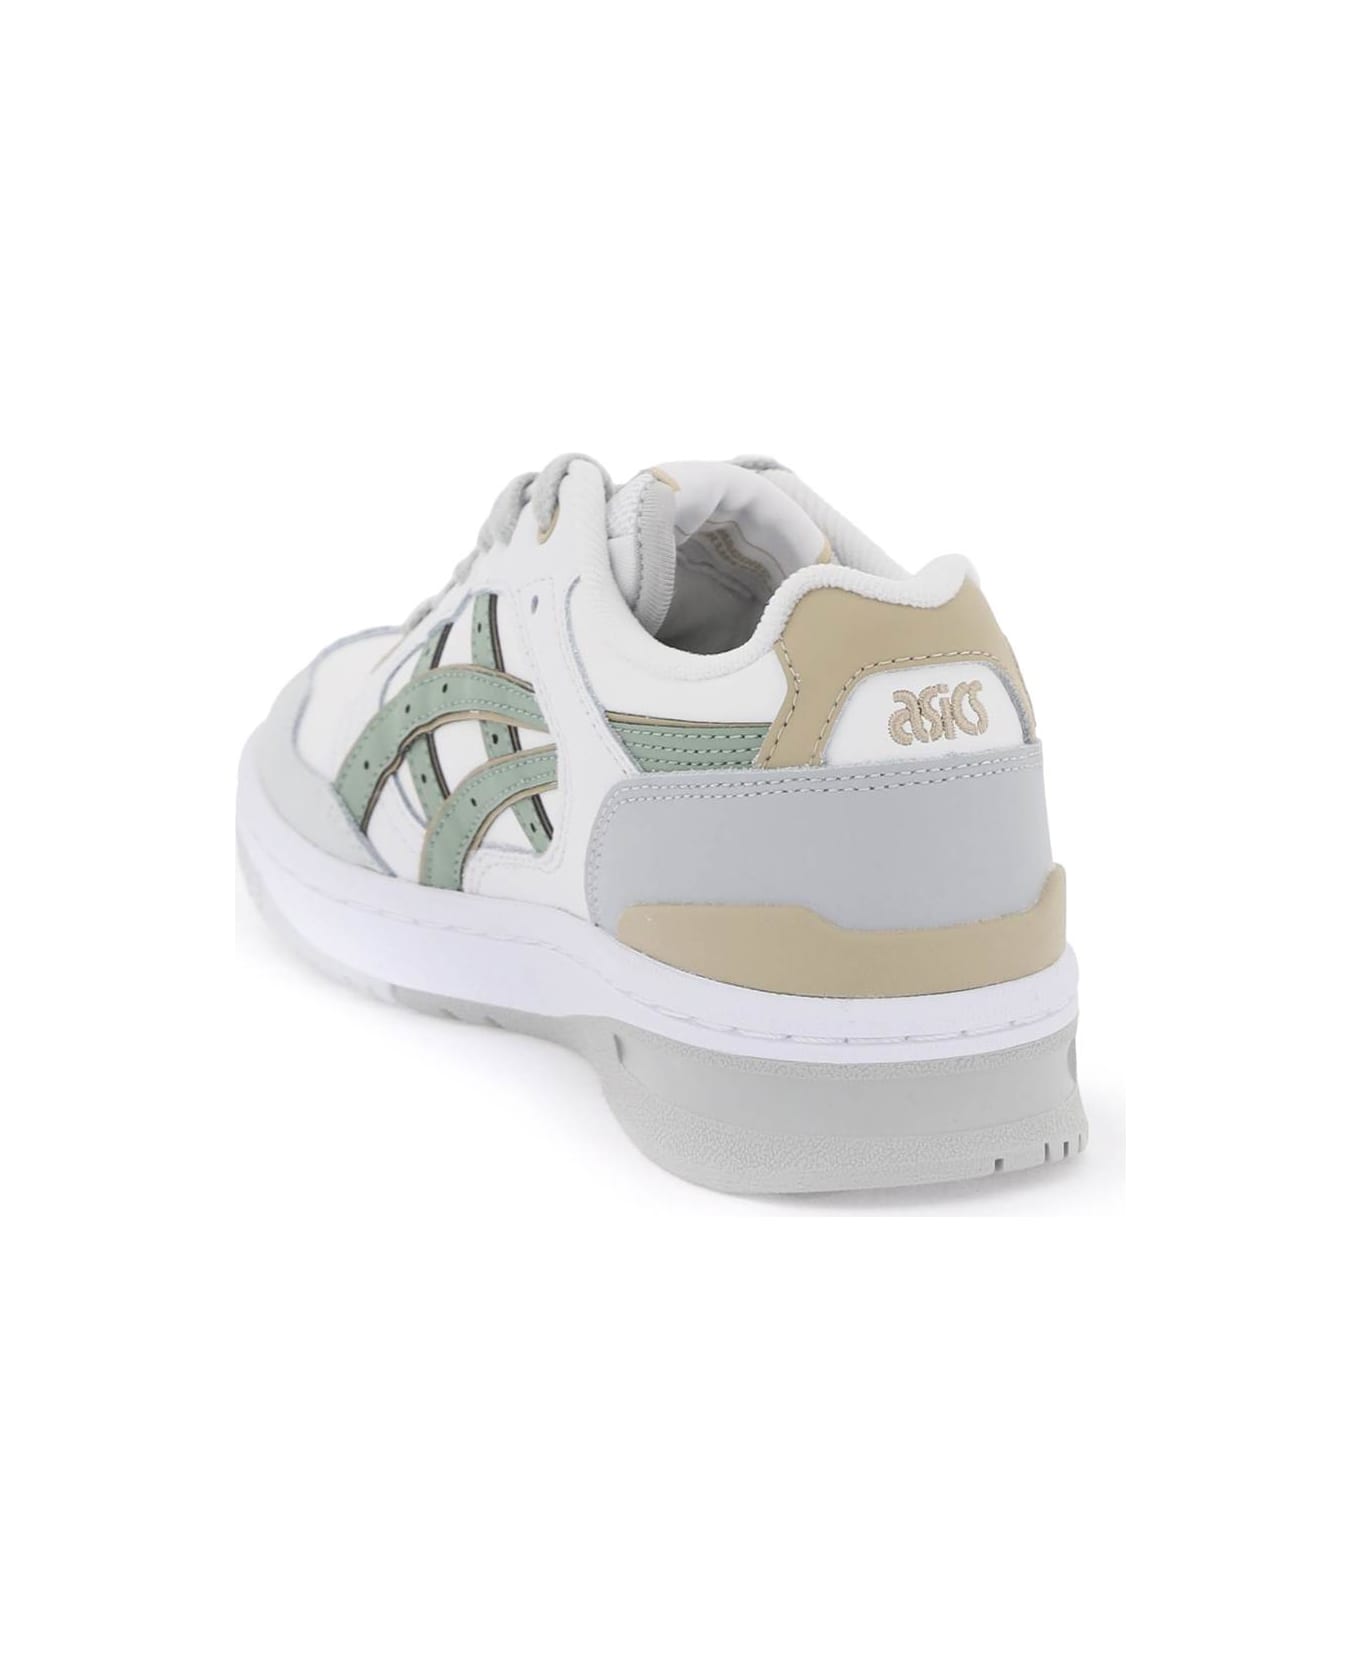 Asics Ex89 Sneakers - WHITE SLATE GREY (White) スニーカー